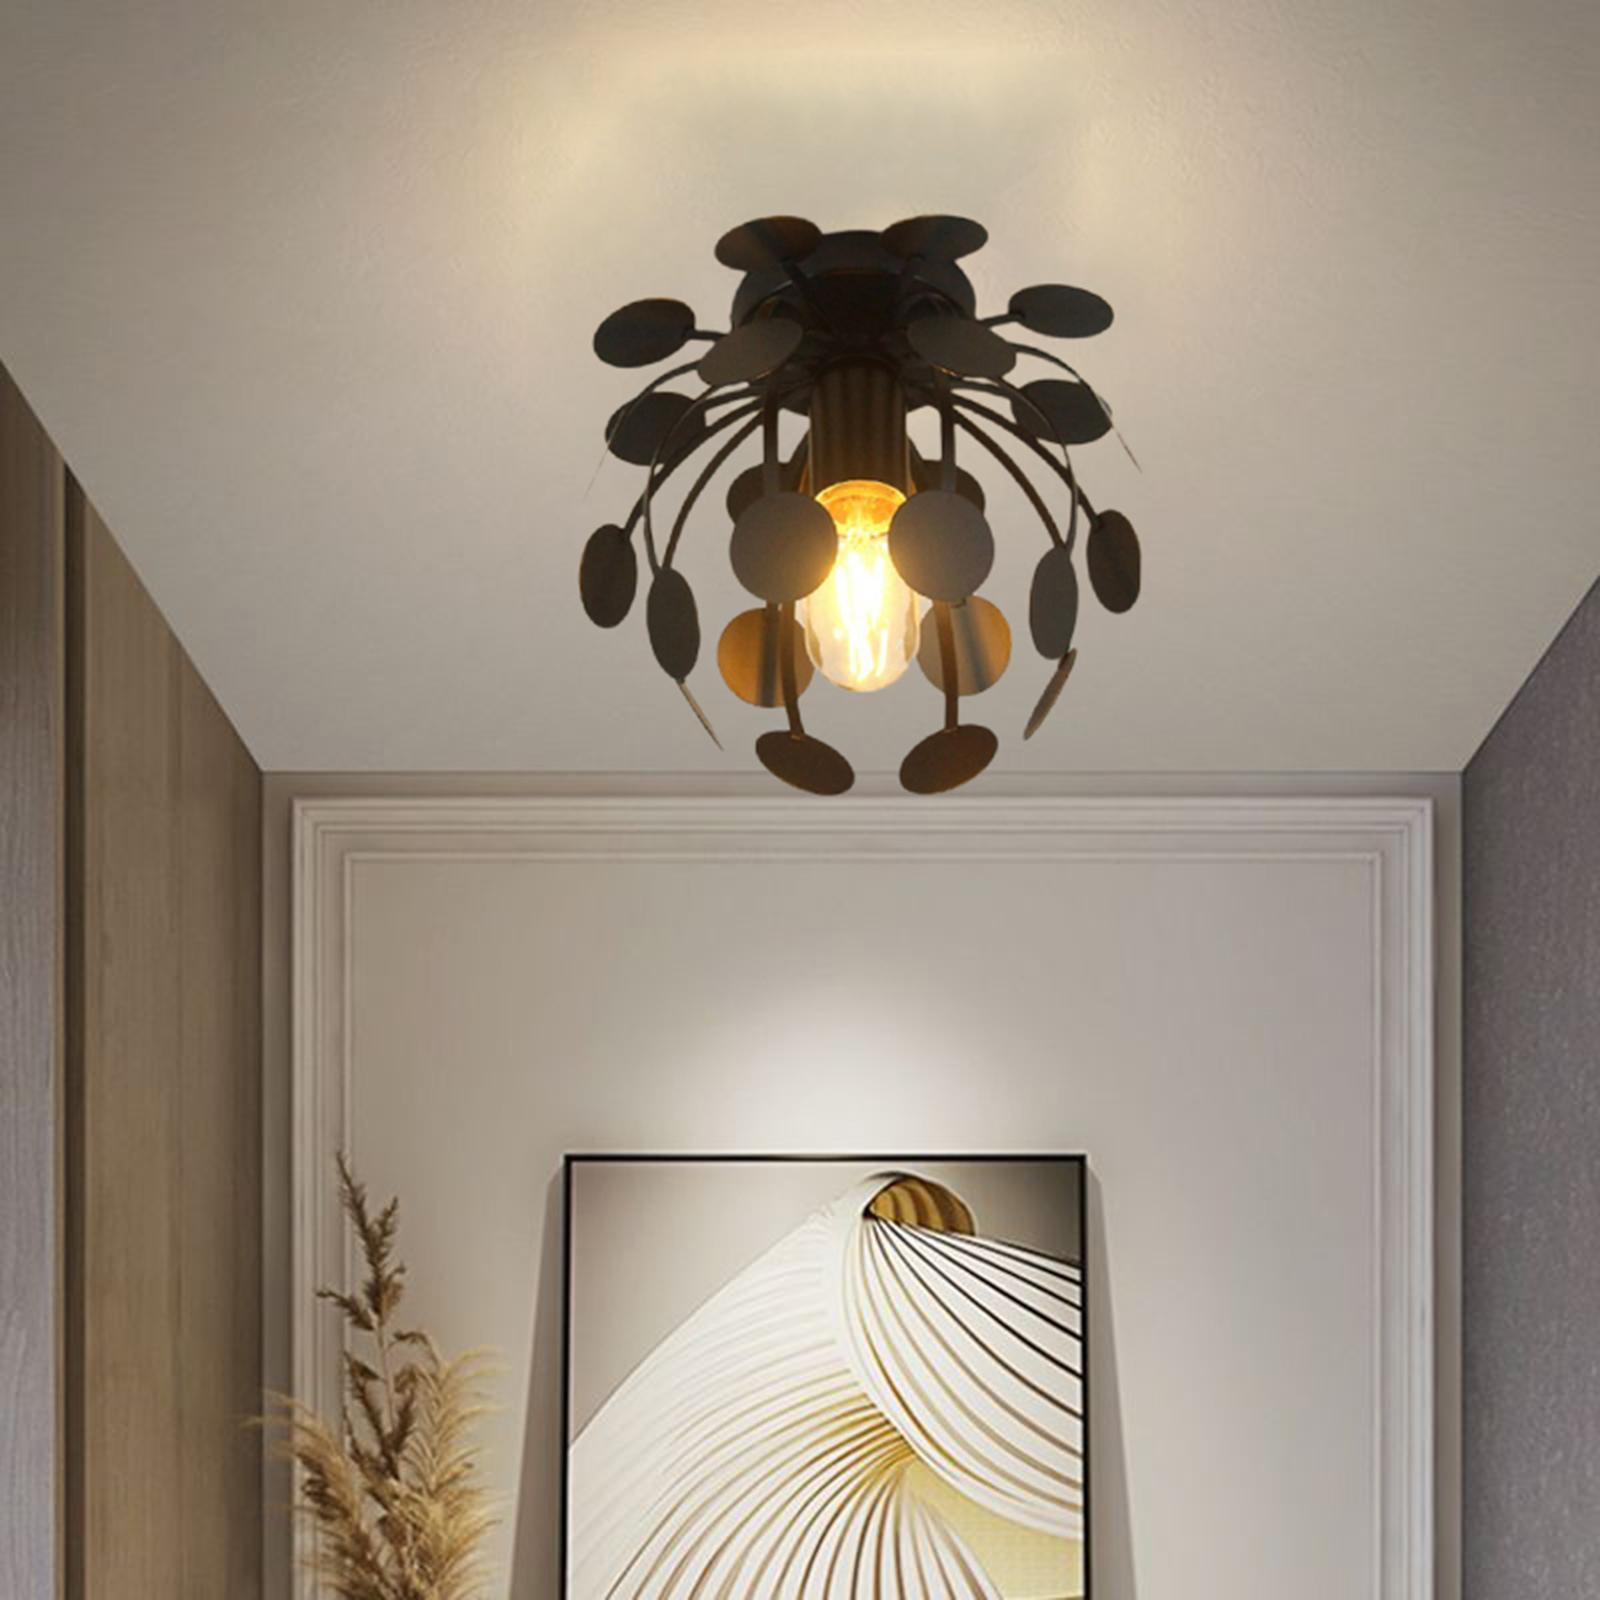 Retro Ceiling Lamp Pendant Light Fixture Lighting for Home Room Loft